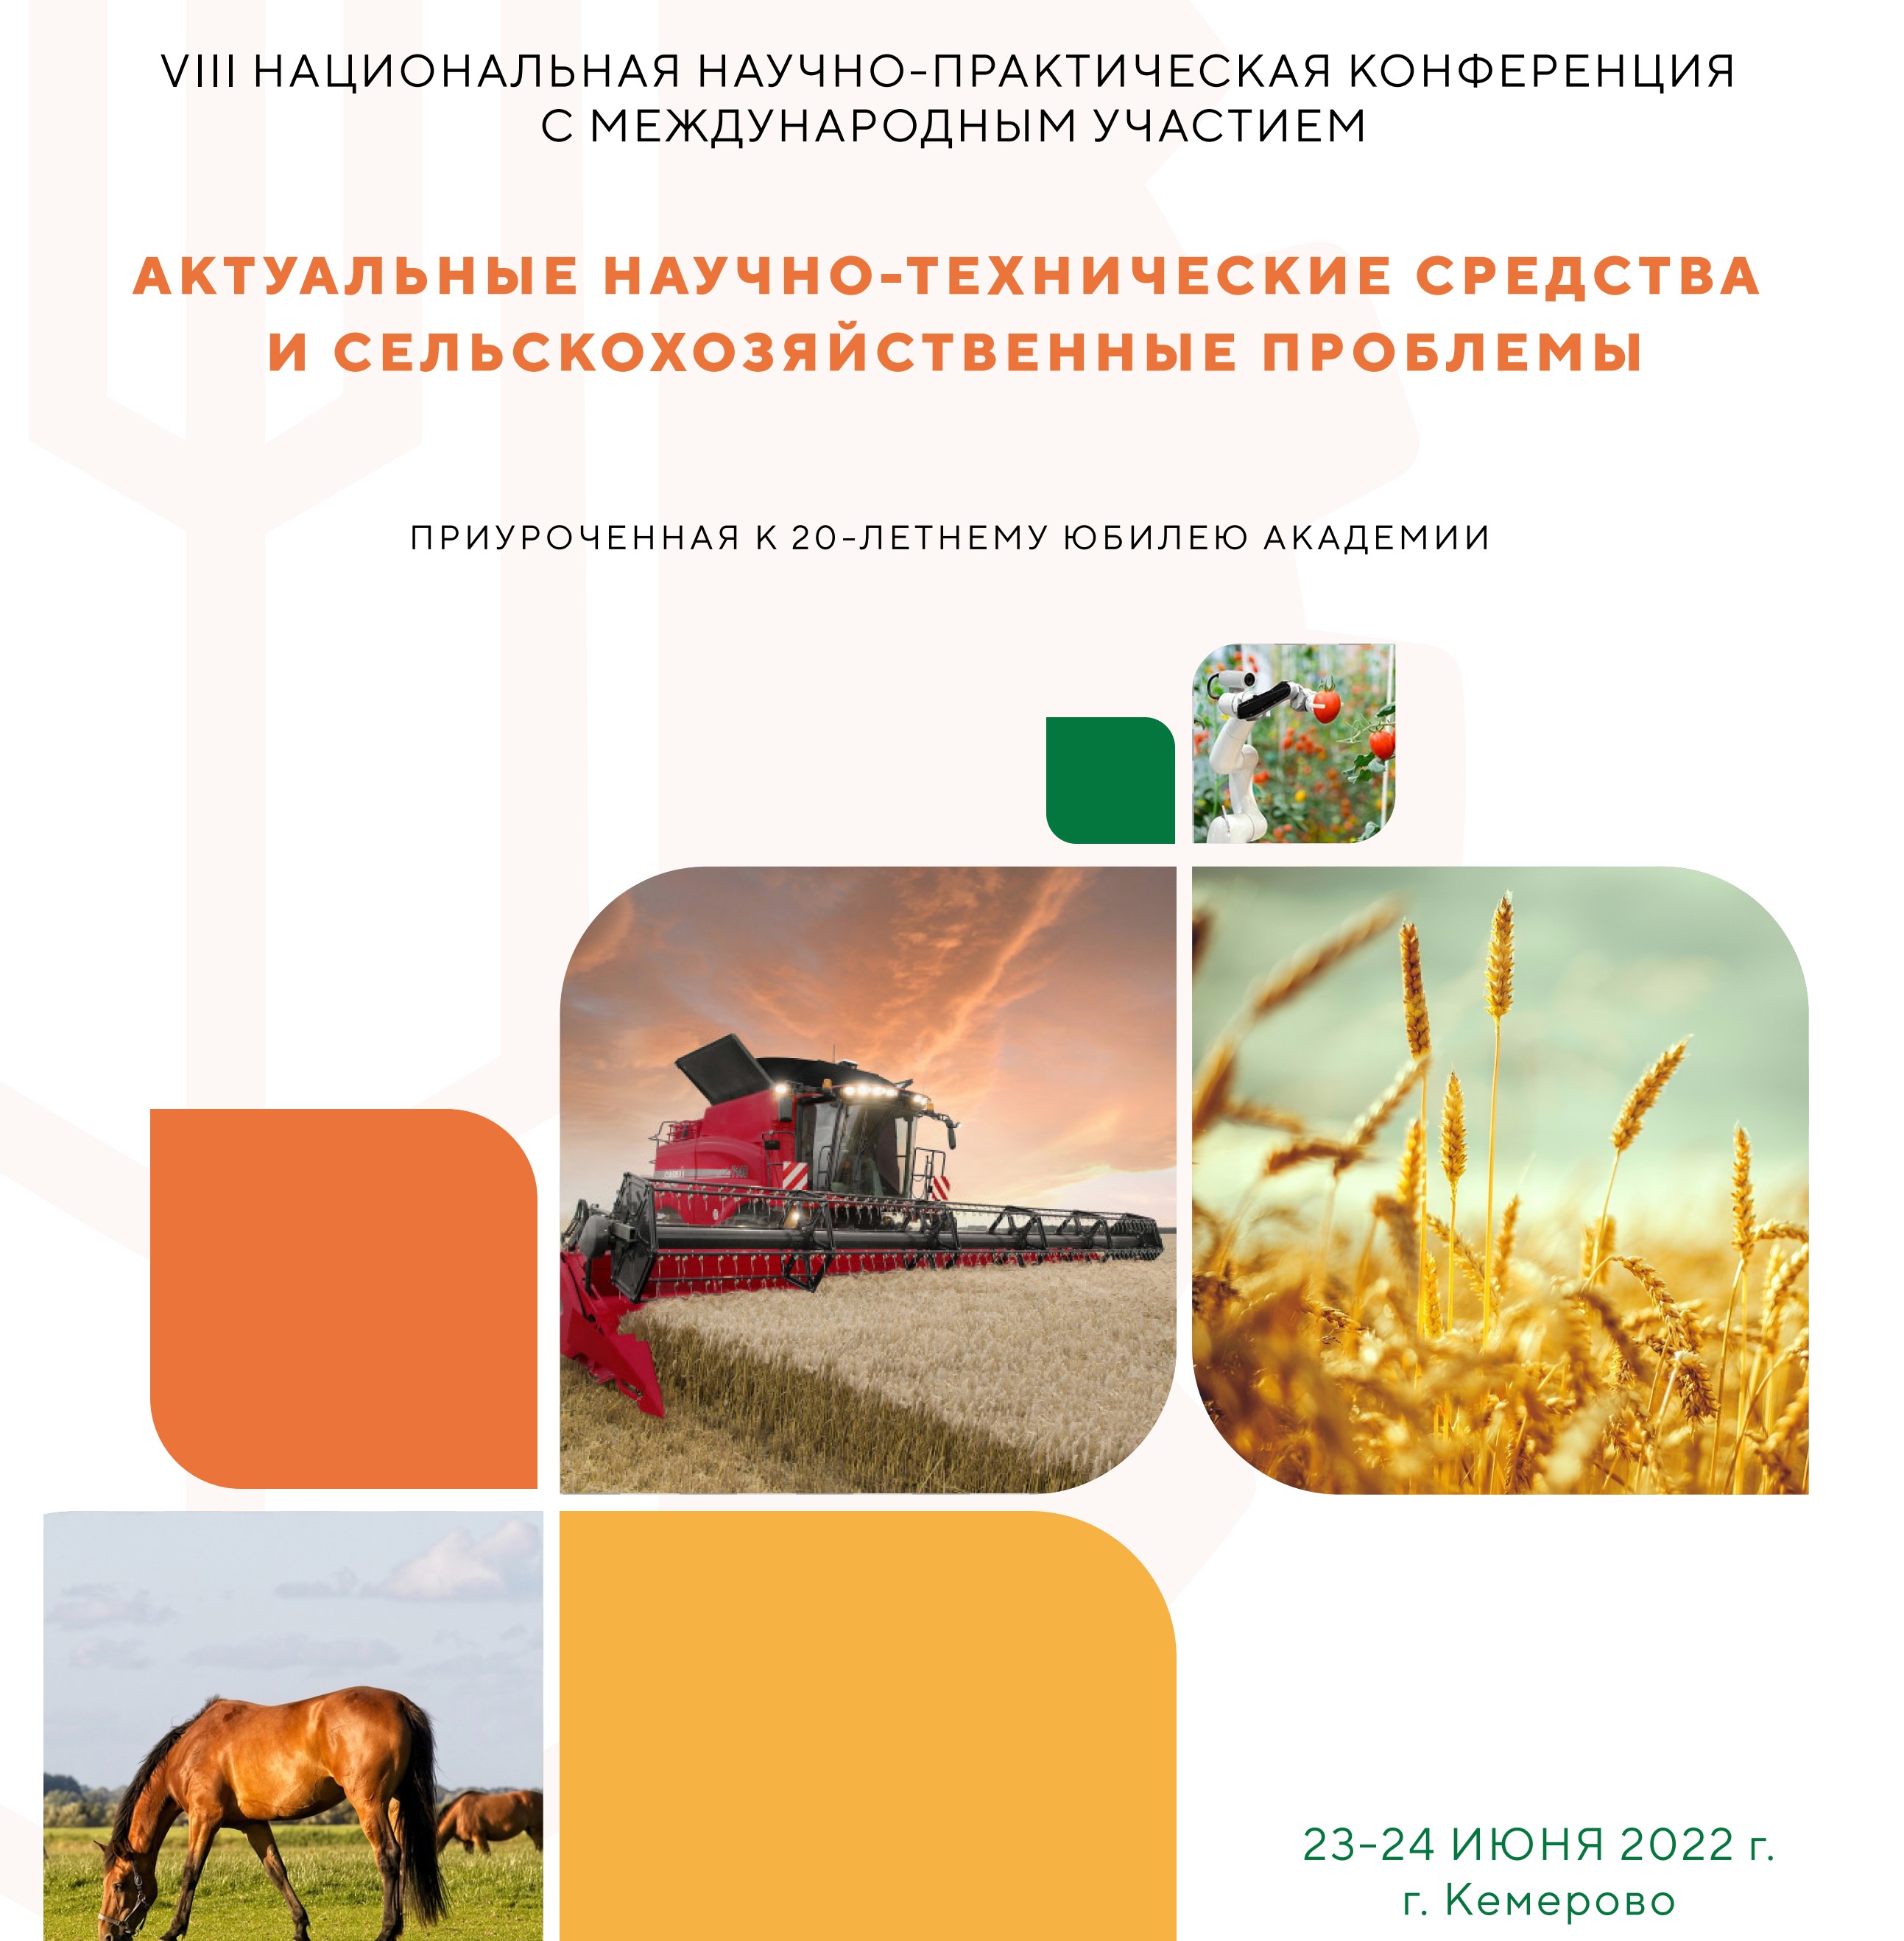 VIII Национальная научно-практическая конференция с международным участием «Актуальные научно-технические средства и сельскохозяйственные проблемы» 